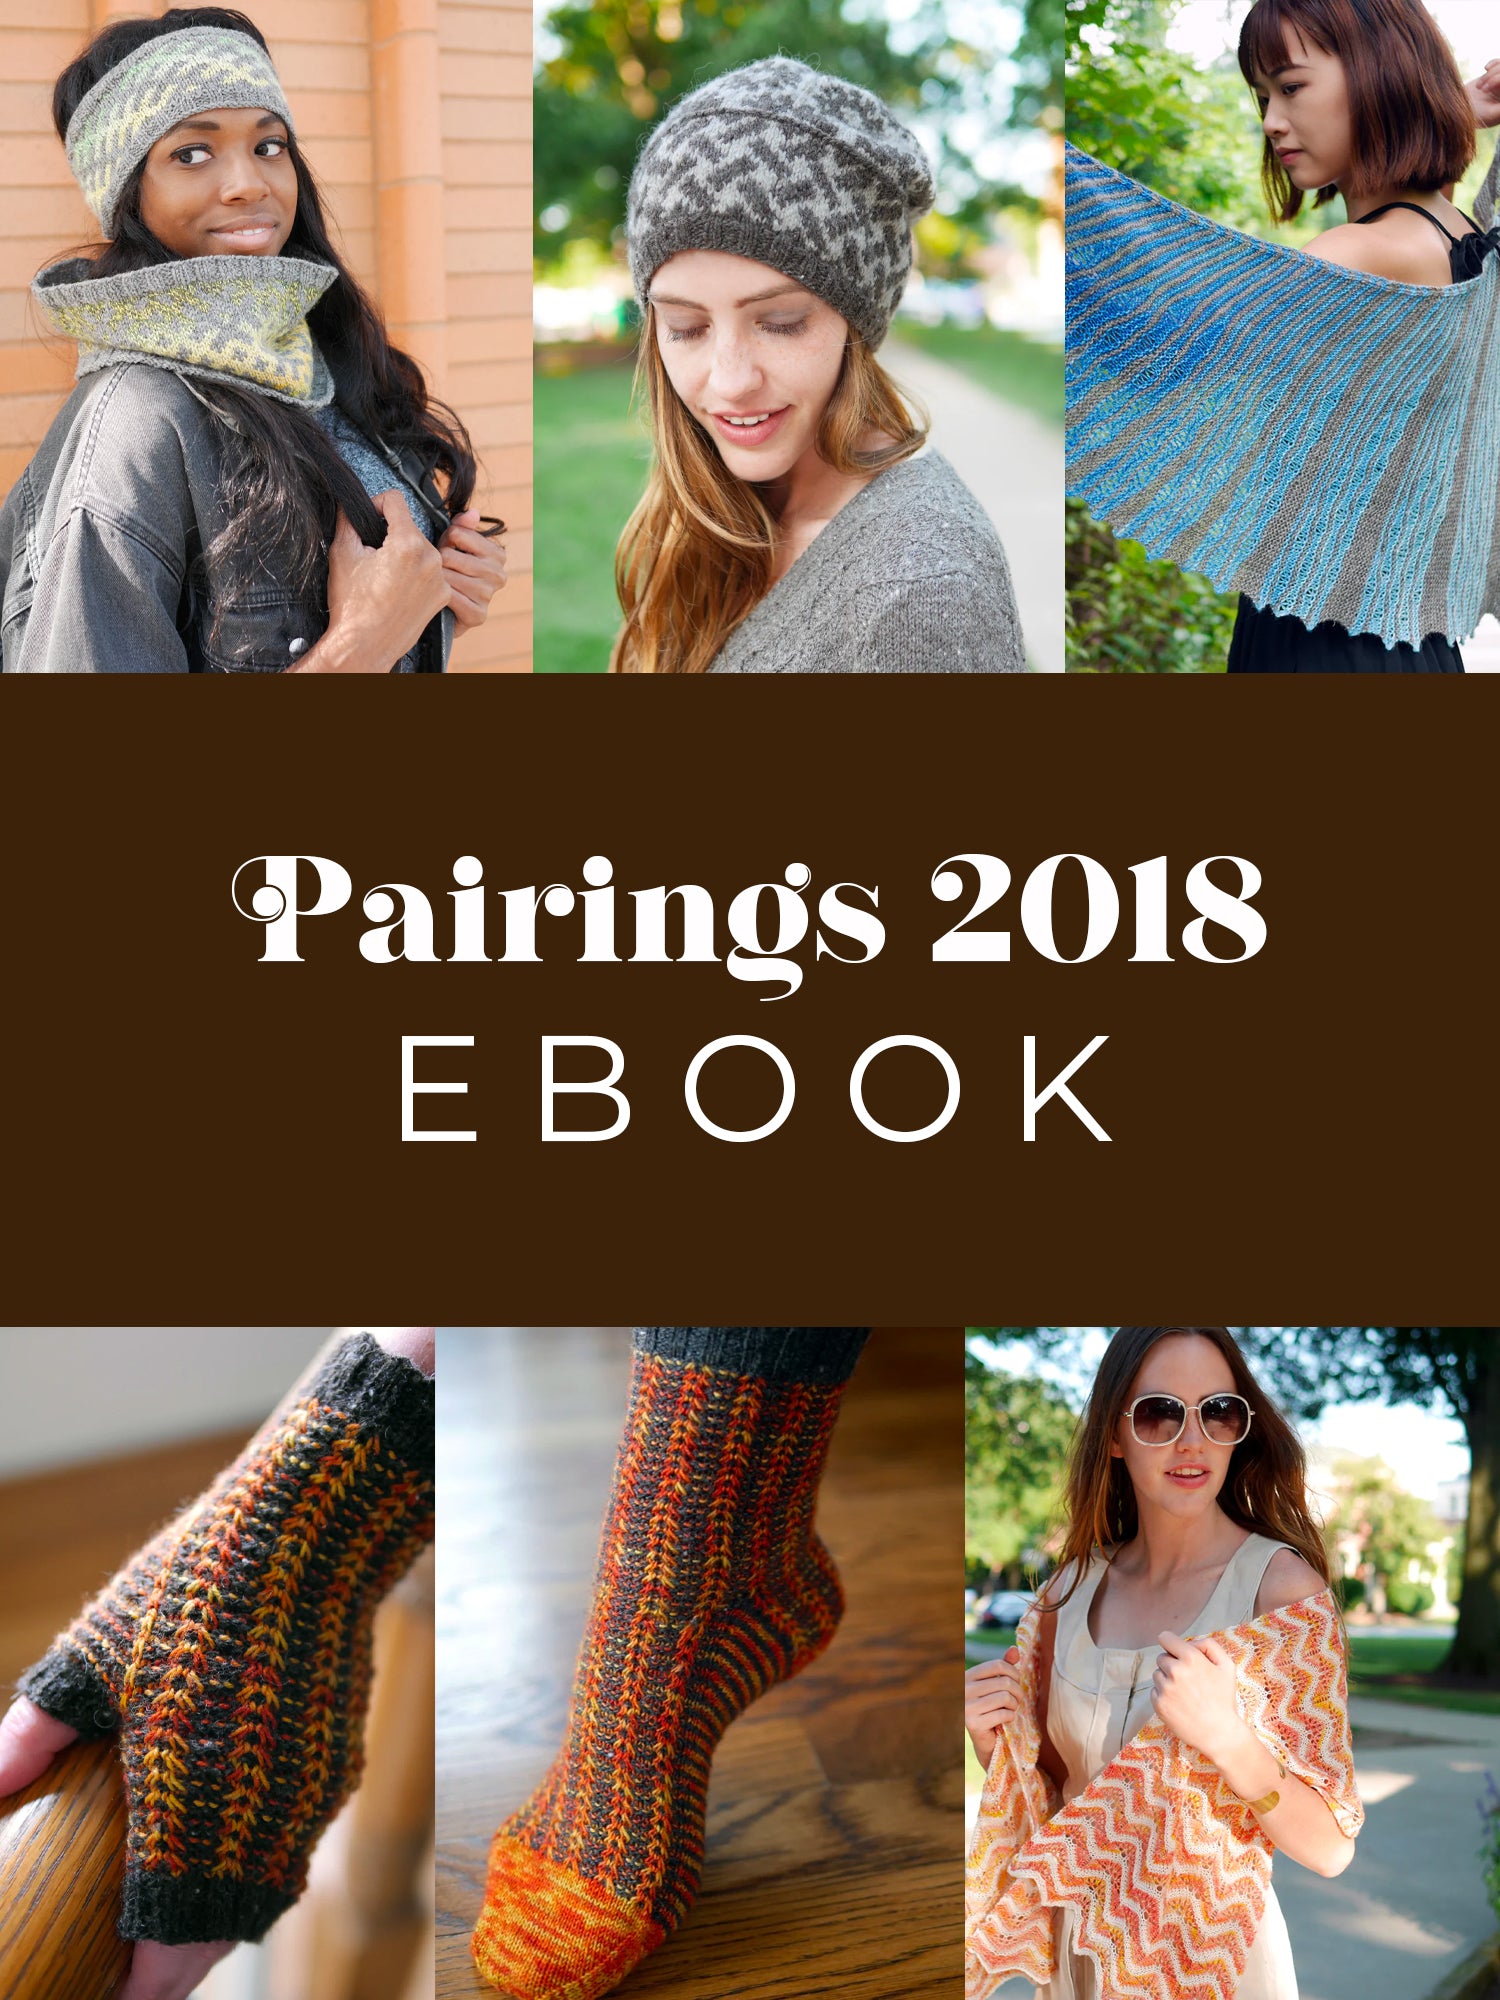 Pairings 2018 ebook